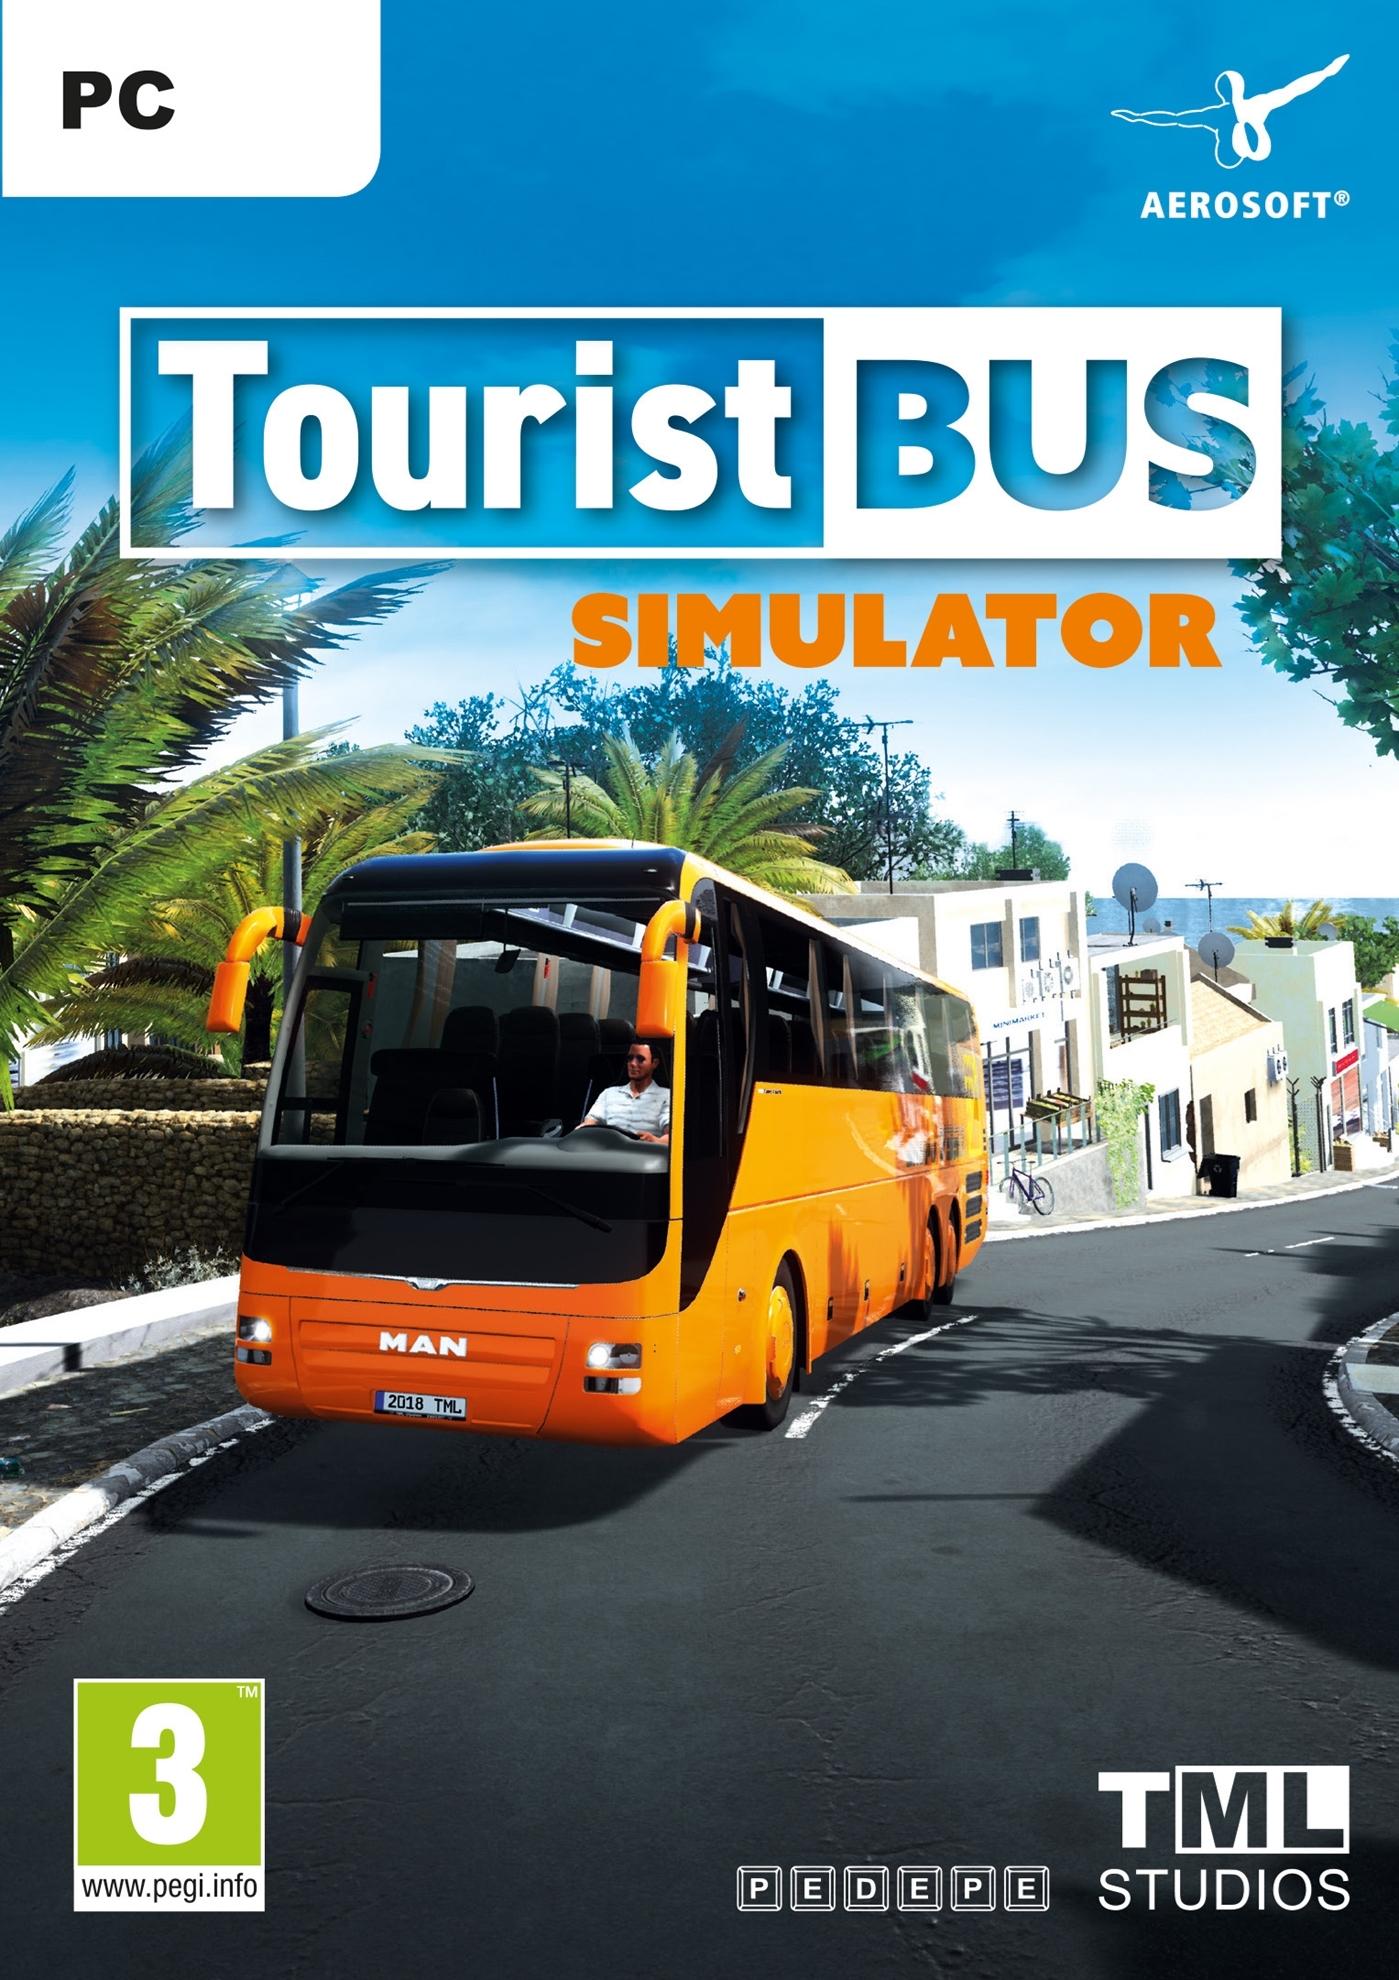 Tourist Bus Simulator | 14358 (1e826daf-384a-3f4e-9c62-34b57165be19)